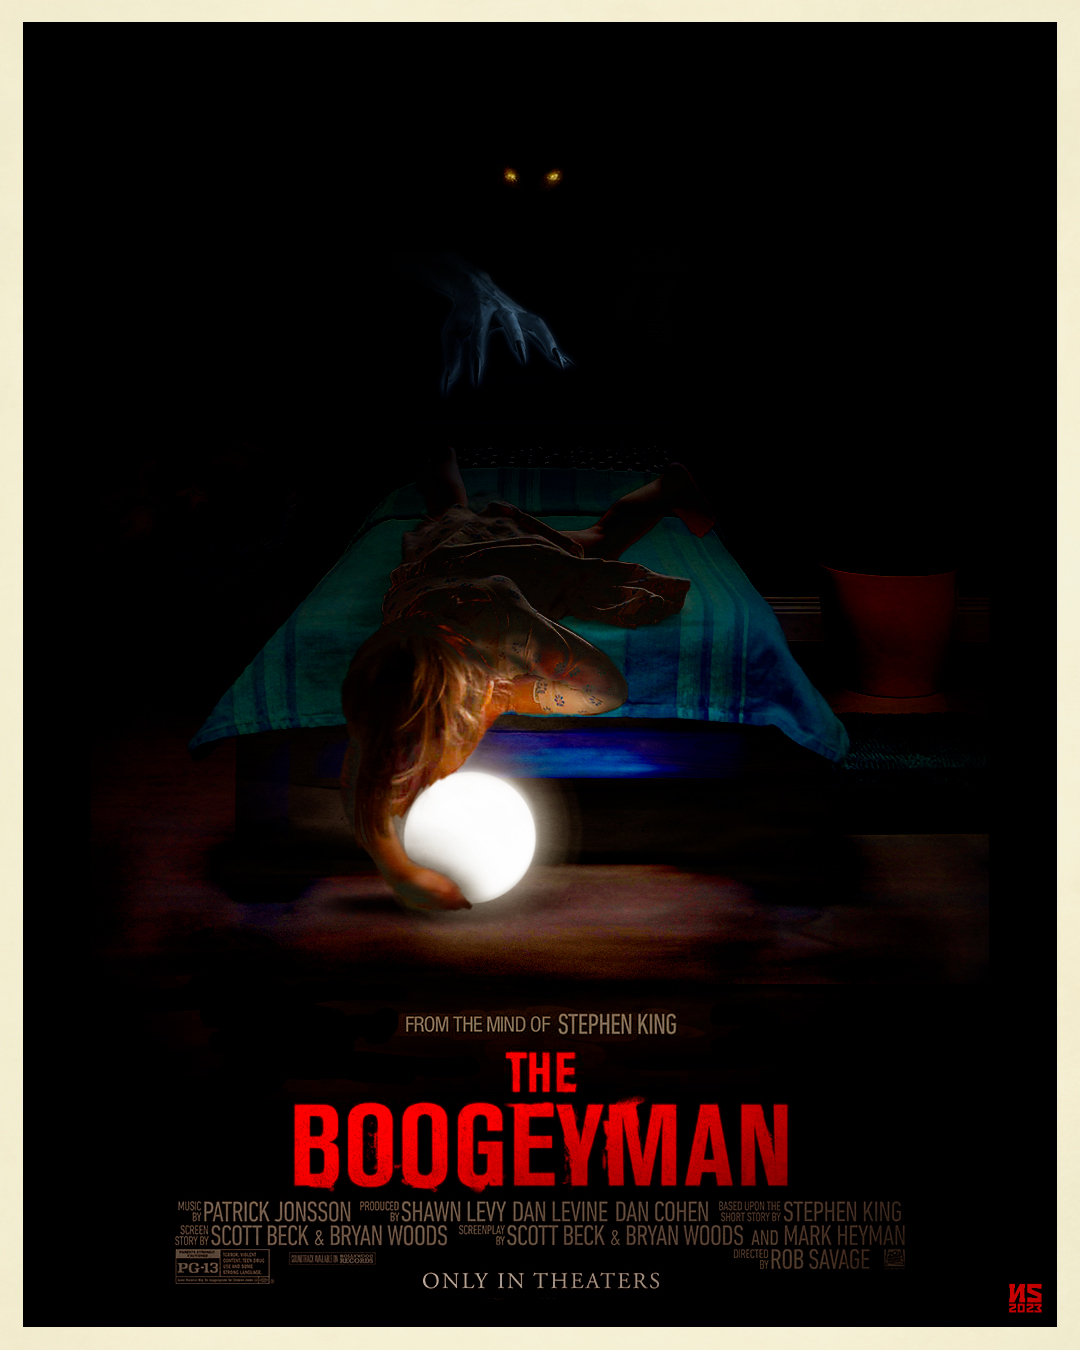 The Boogeyman PosterSpy